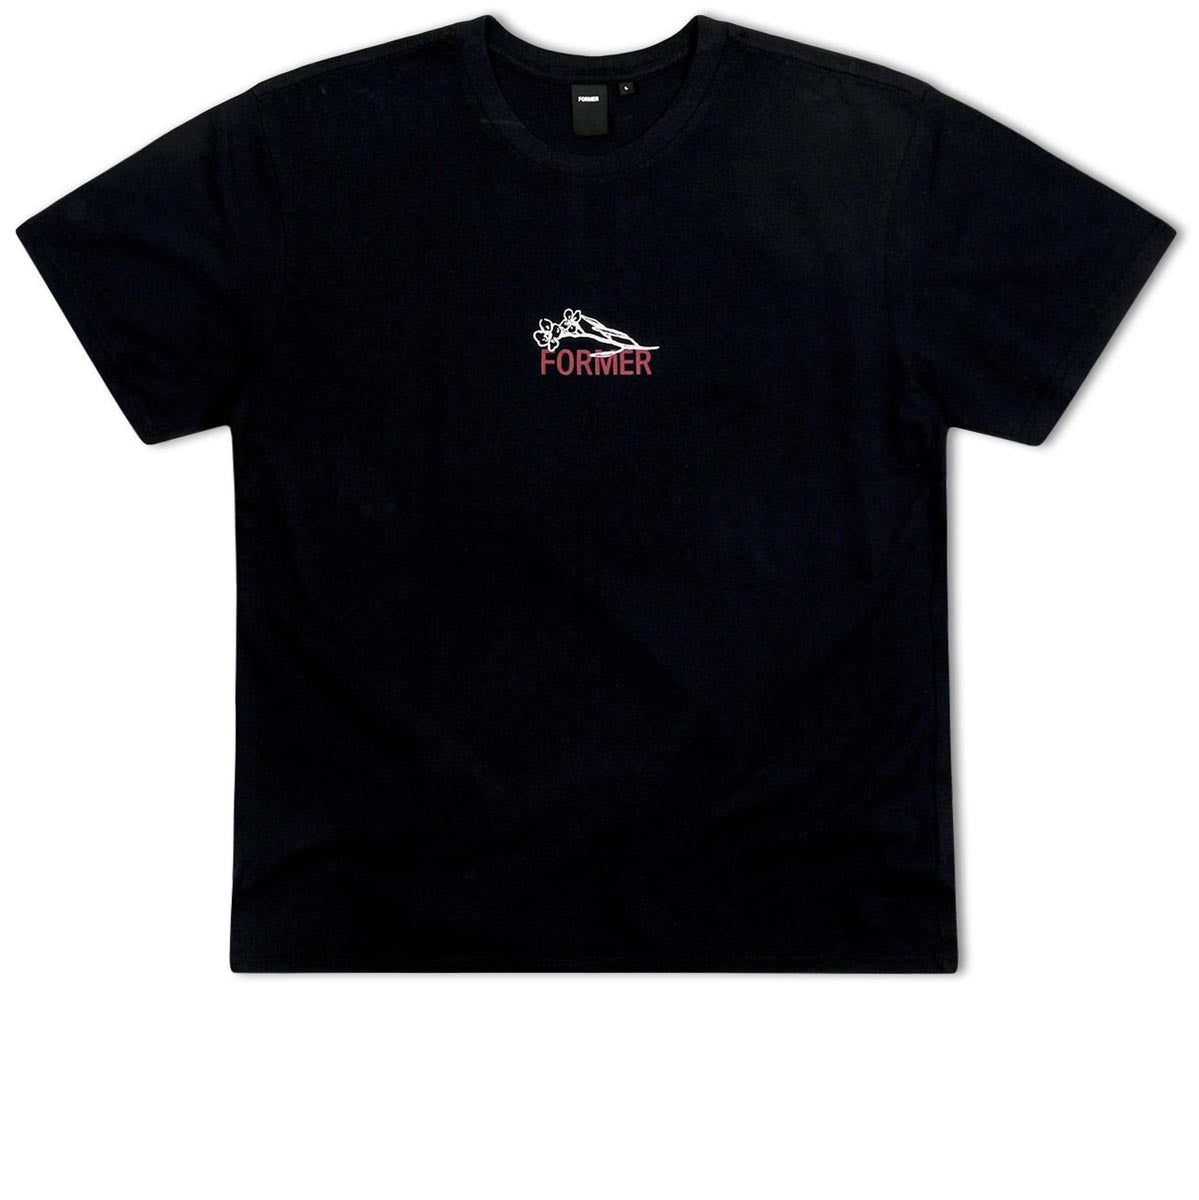 Former Vestige T-Shirt - Black image 1